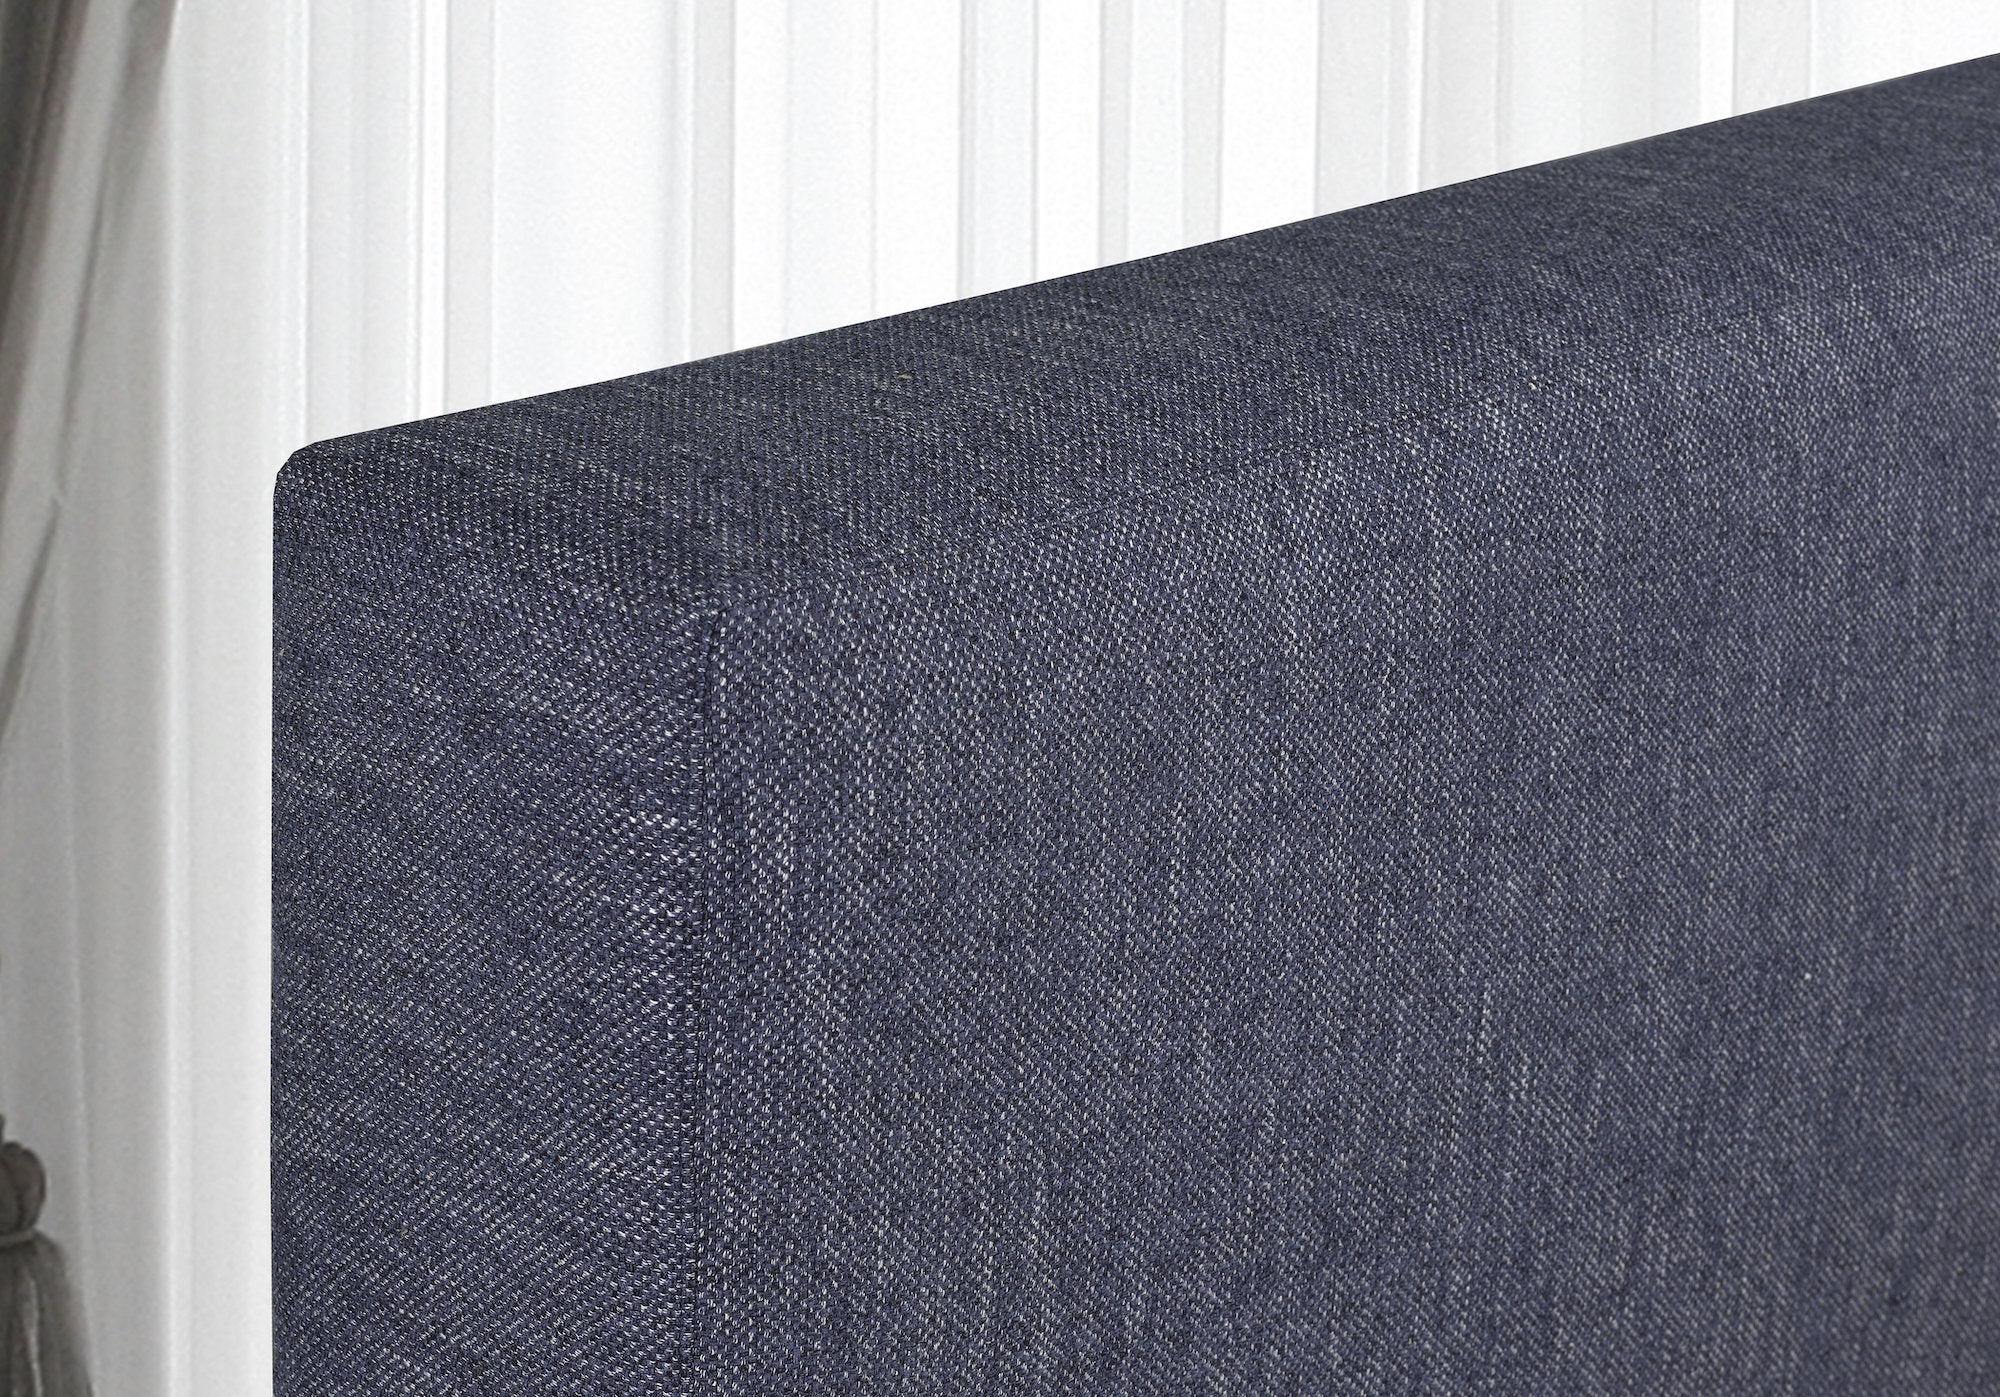 Hudson Platform Bed - Blue Linen - Canadian Furniture